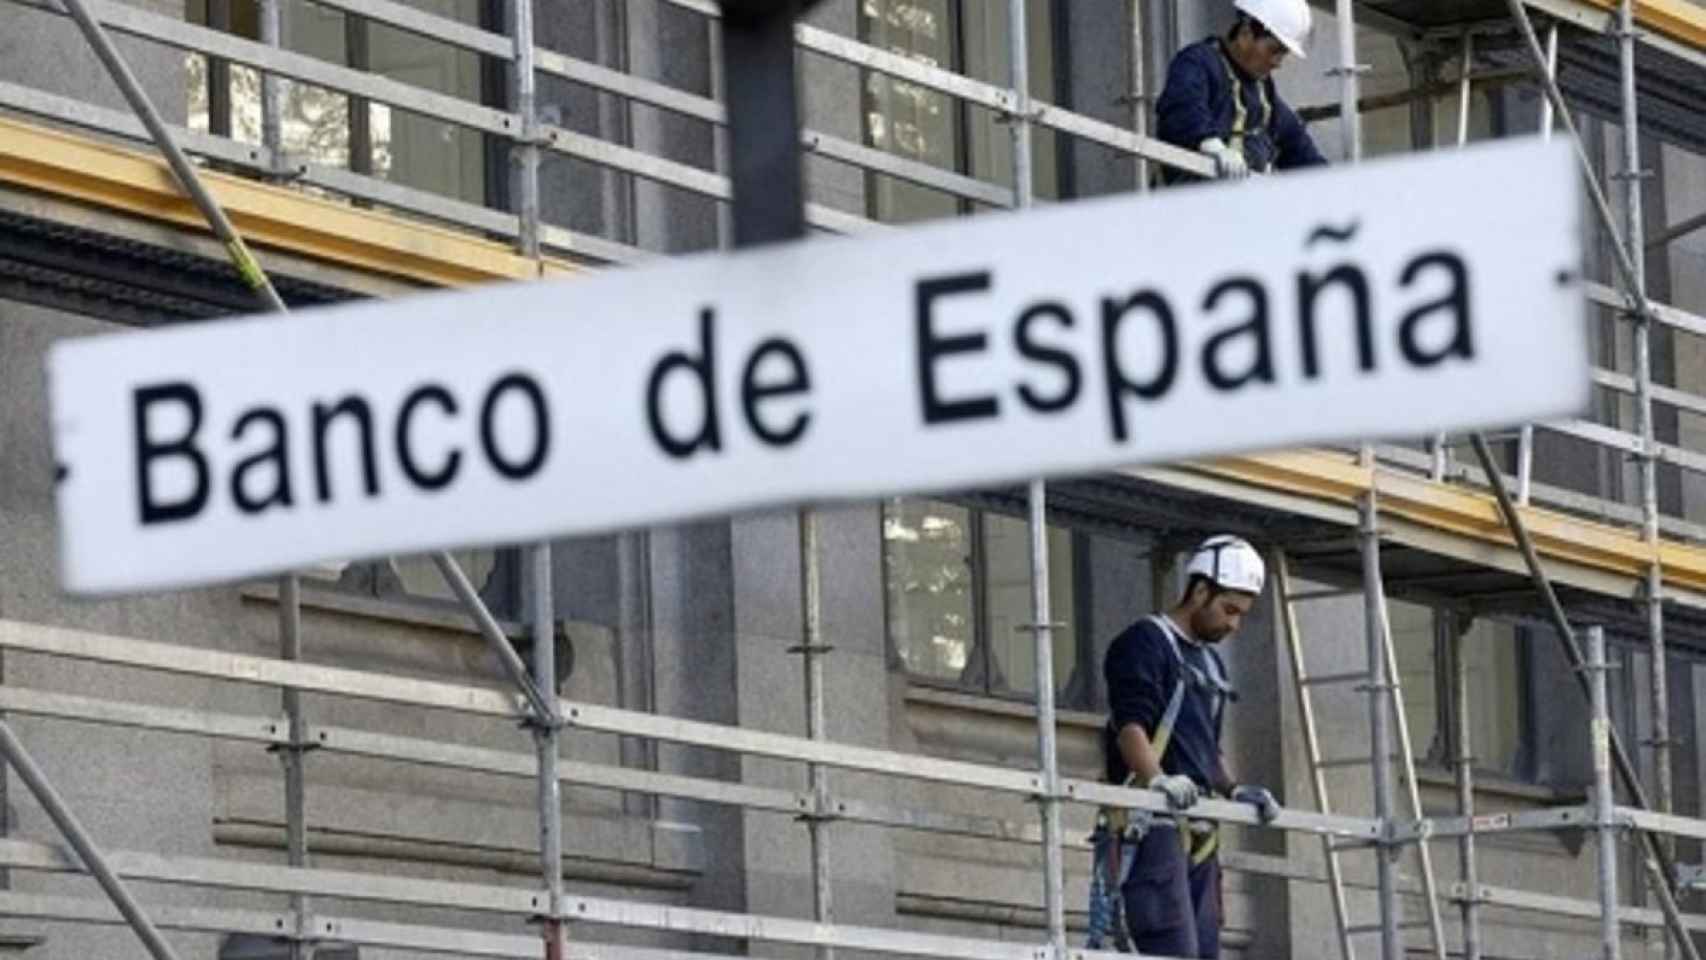 Los gastos hipotecarios disparan las reclamaciones al Banco de España